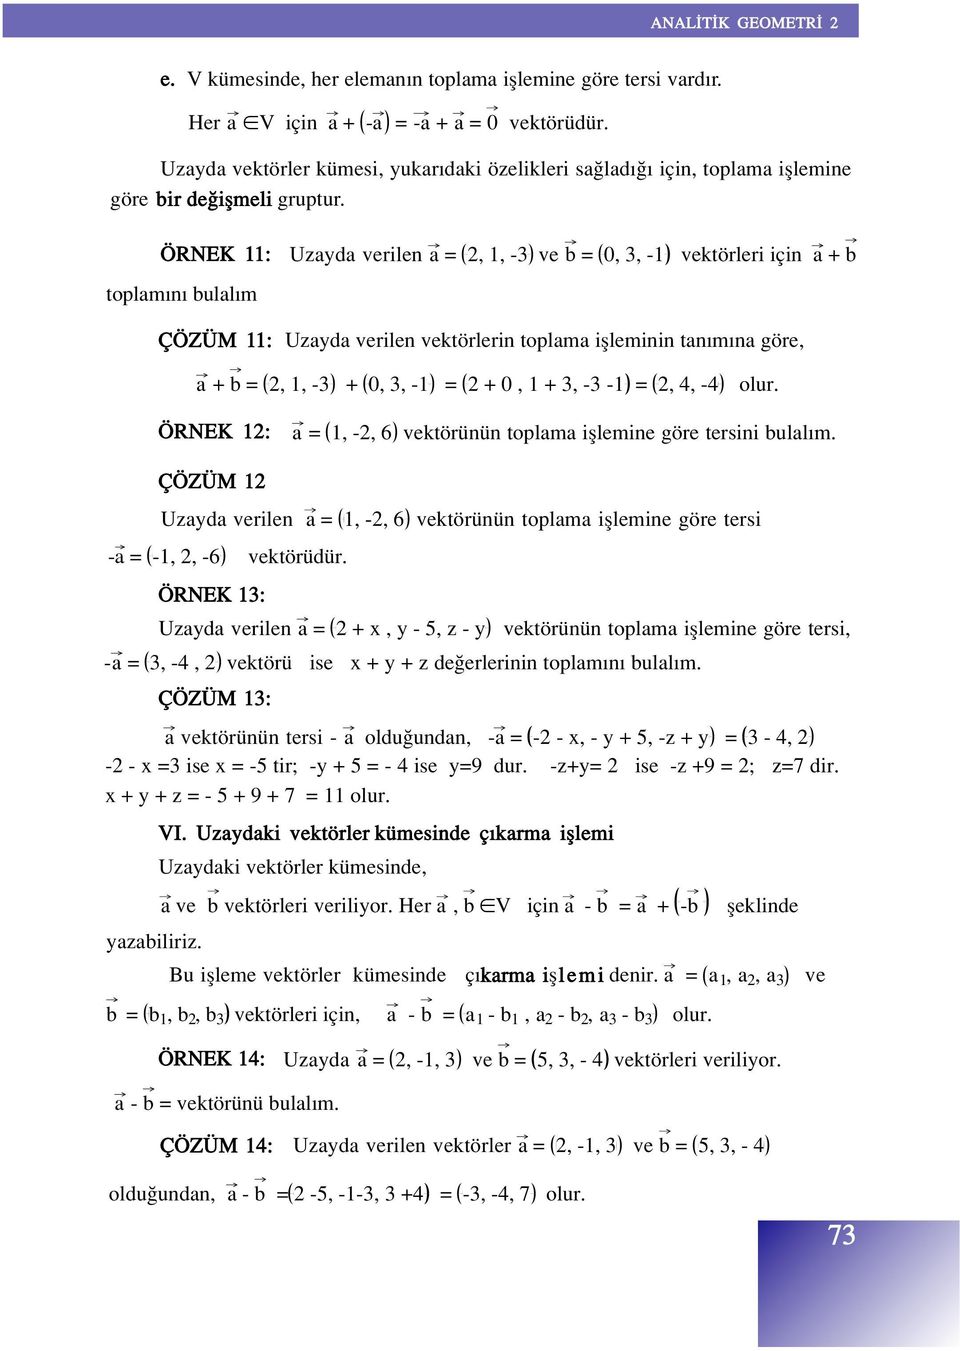 ÖRNEK 11: toplam n bulal m Uzayda verilen a =, 1, -3 ve b = 0, 3, -1 vektörleri için a + b ÇÖZÜM 11: Uzayda verilen vektörlerin toplama iflleminin tan m na göre, a + b =, 1, -3 + 0, 3, -1 = + 0, 1 +